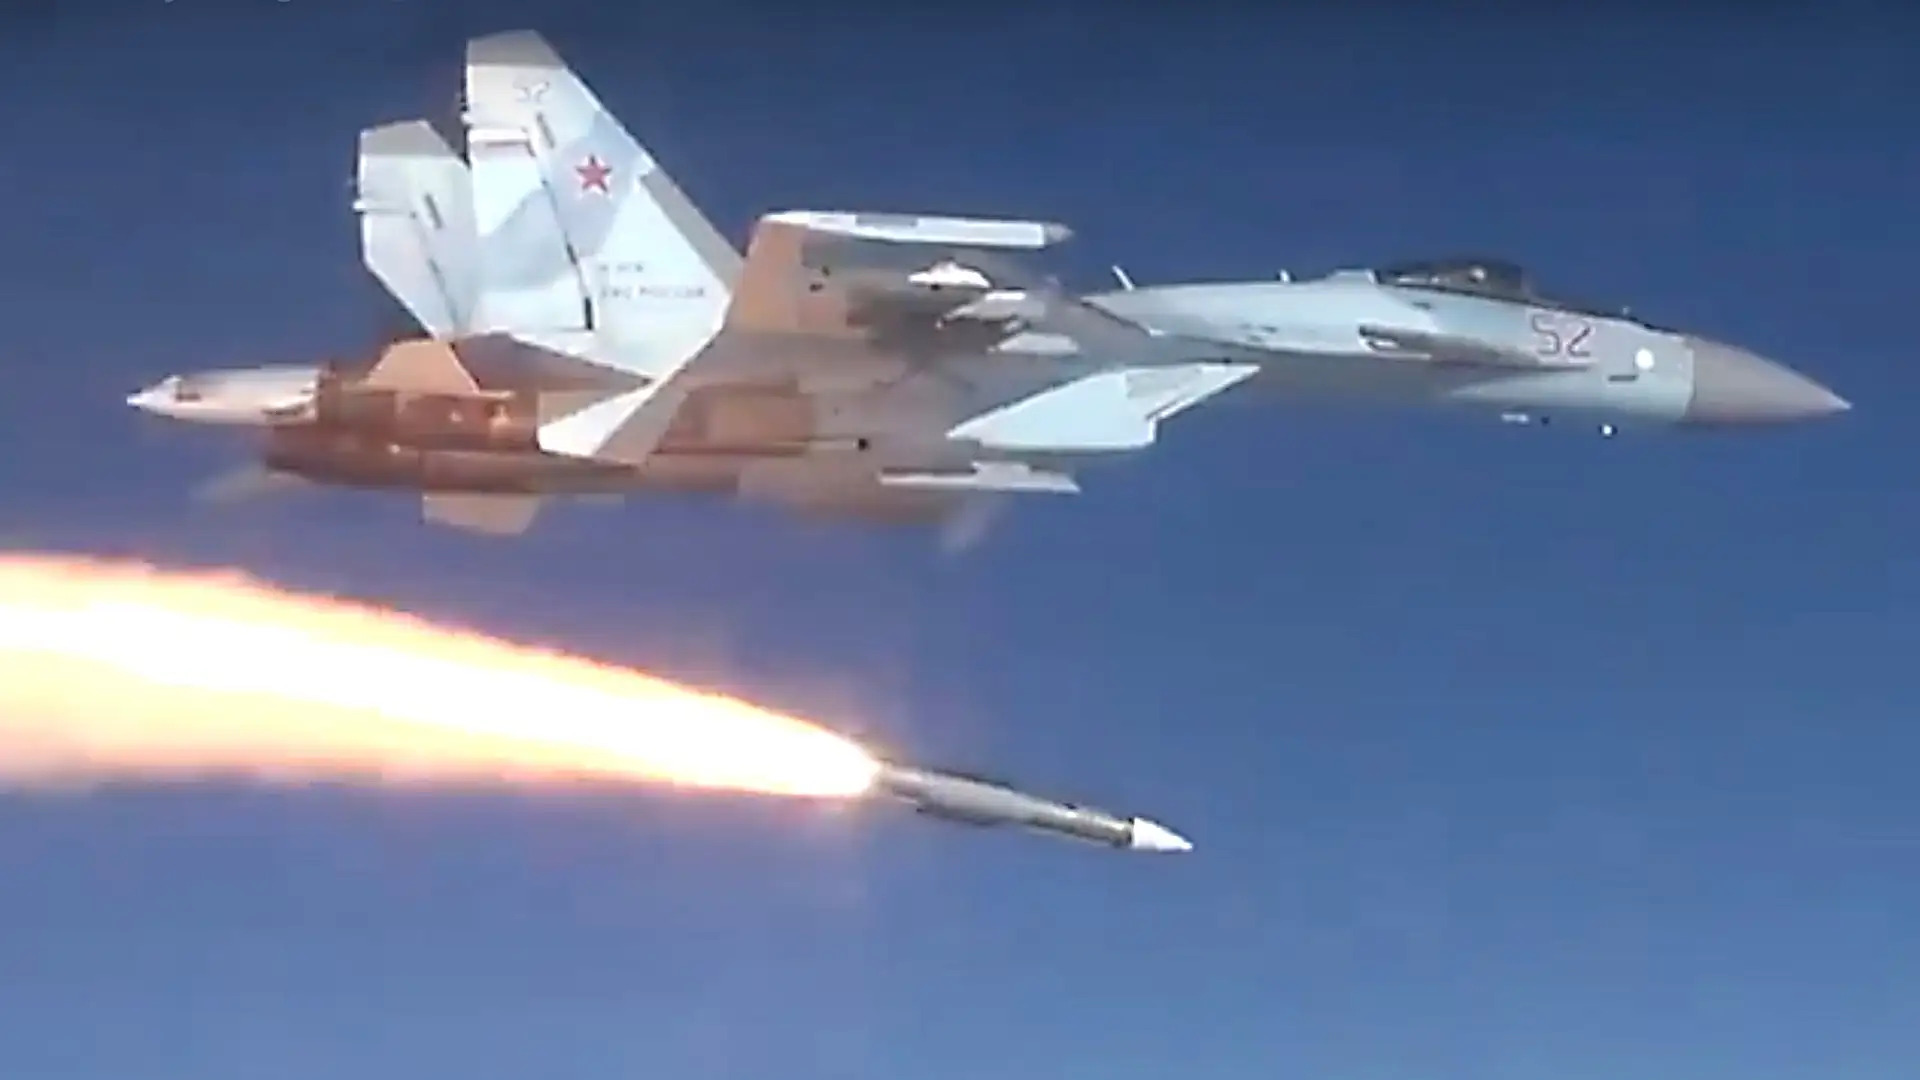 Настоящая ракета класса «воздух-воздух» большой дальности — российская Р-37М запущена с узла внешней подвески истребителя Су-35С